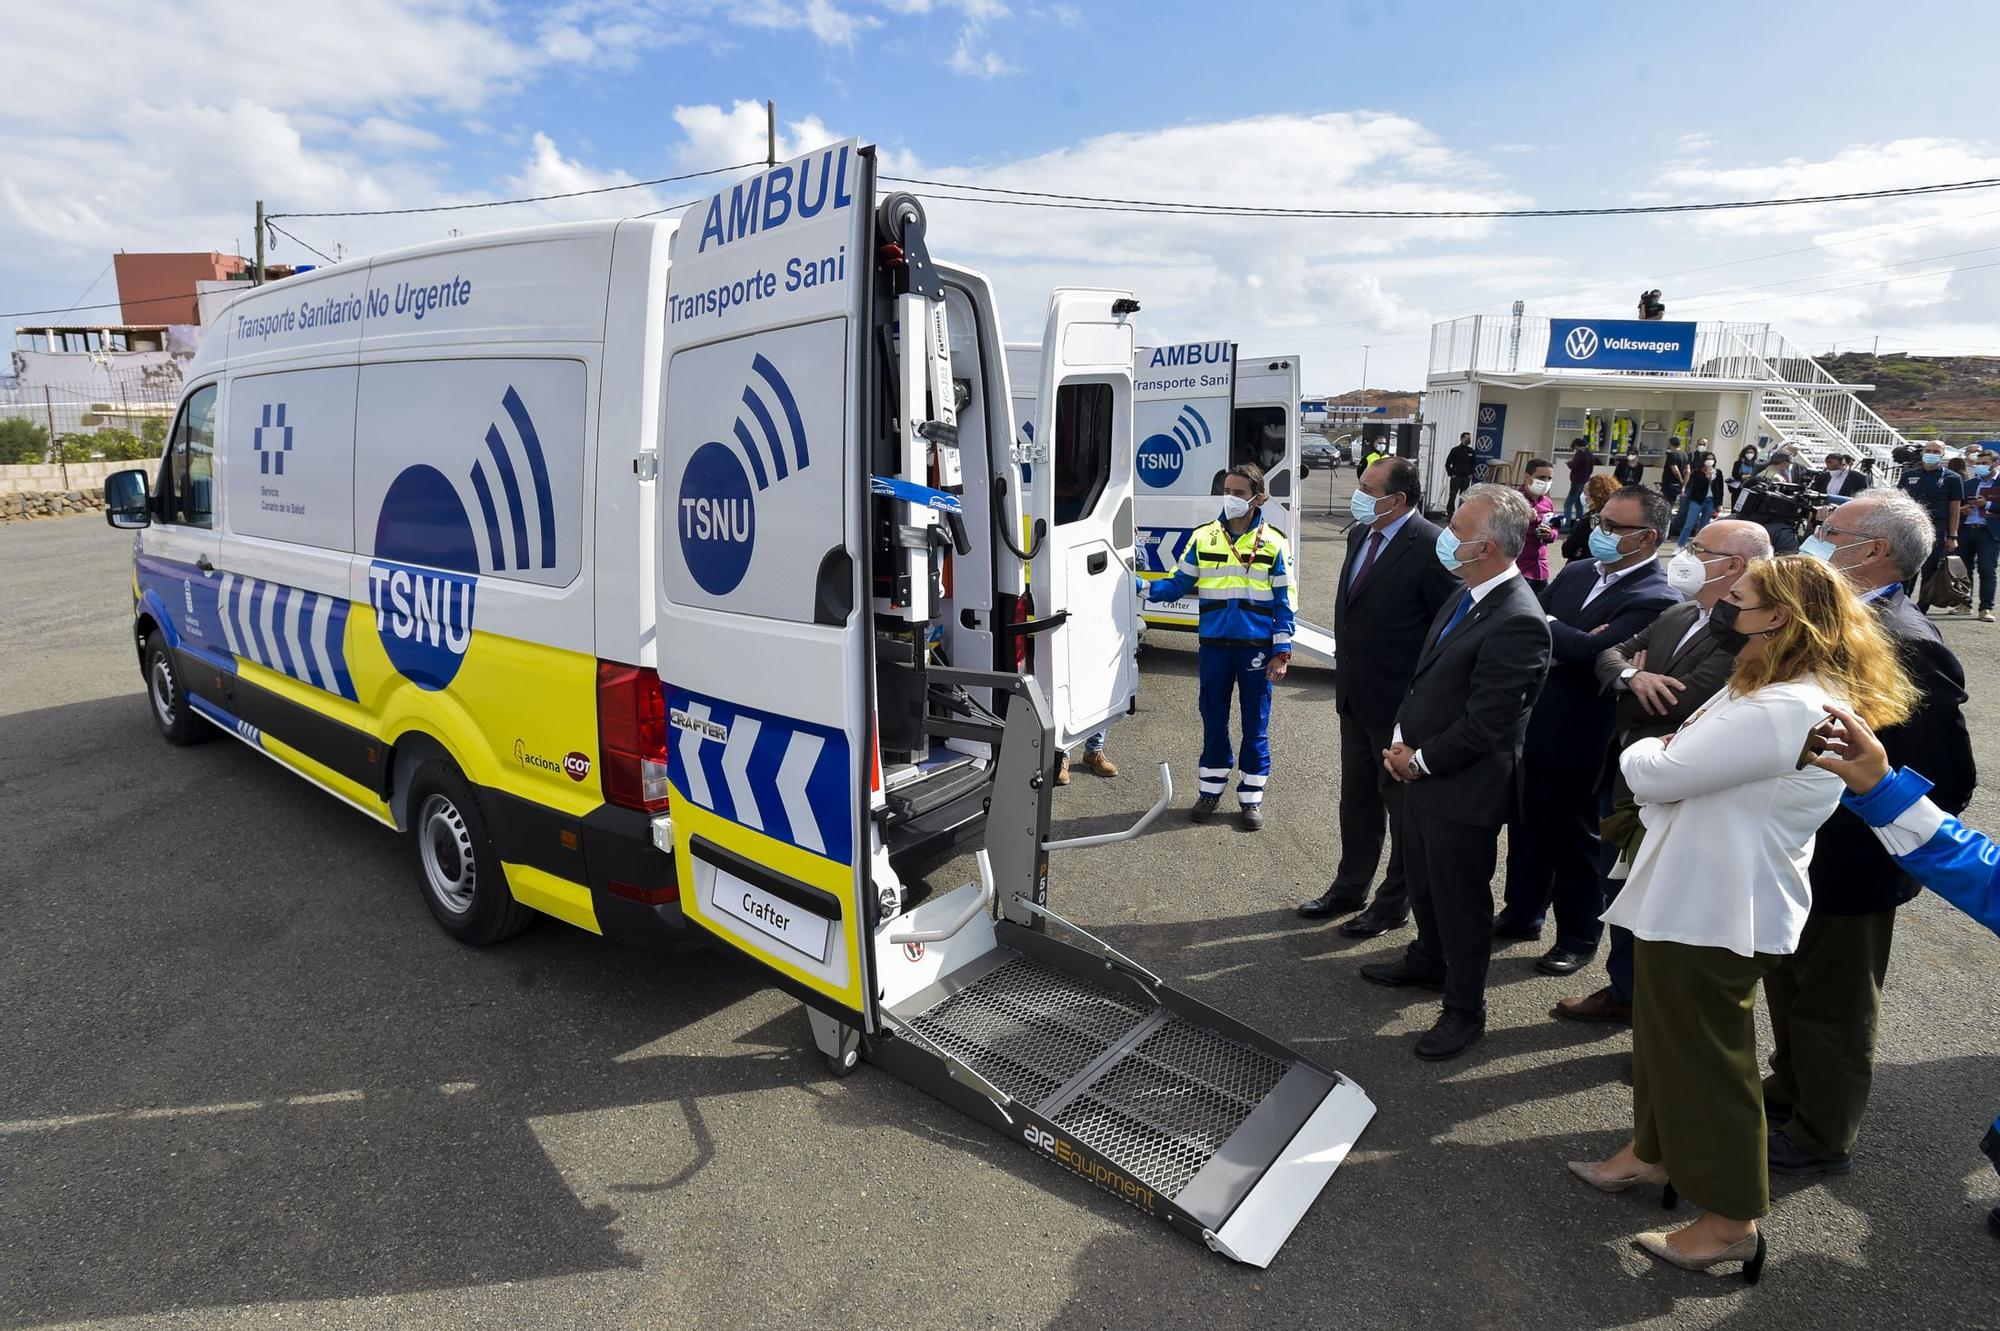 Presentación de nuevas ambulancias del transporte sanitario no urgente en Gran Canaria (5/06/2021)